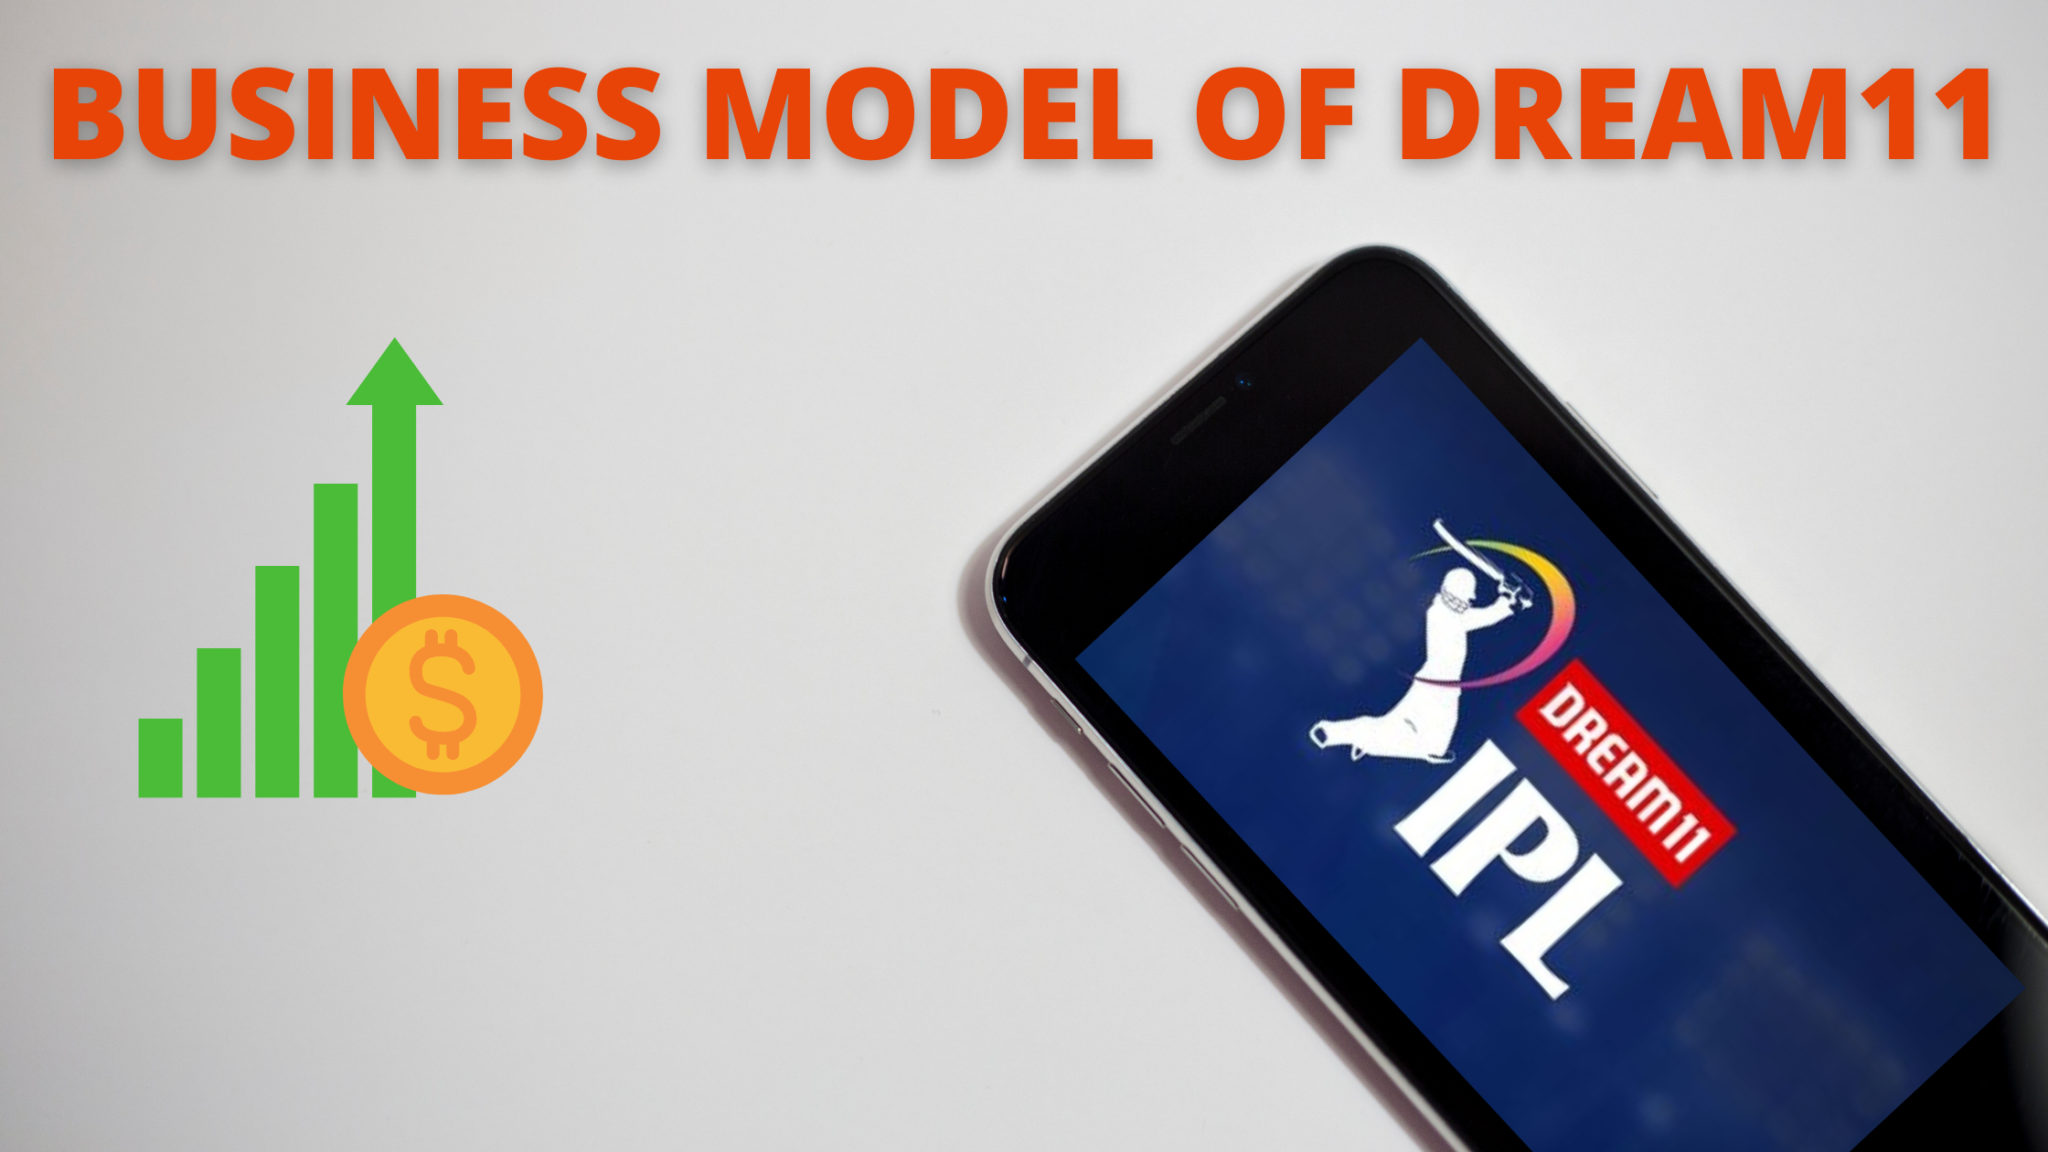 dream11 business model